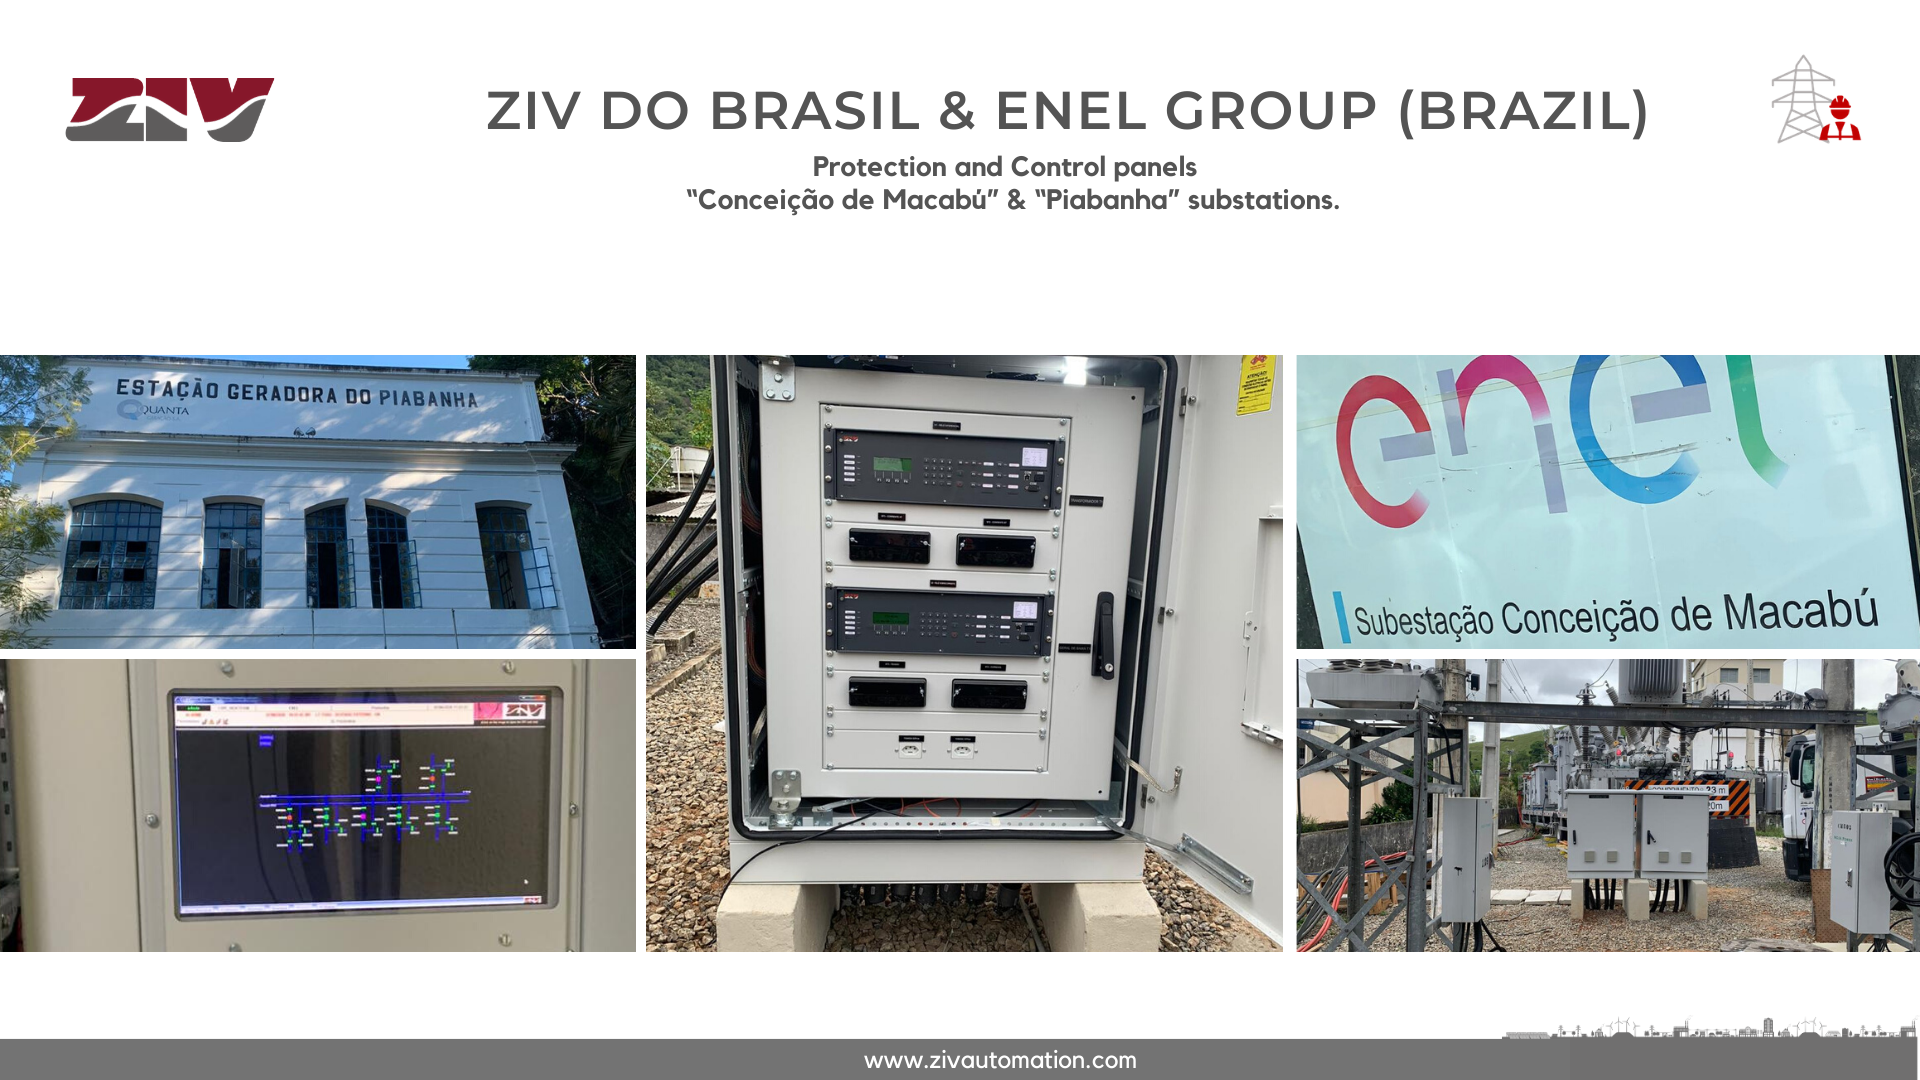 https://www.zivautomation.com/wp-content/uploads/2020/06/ziv-do-brasil-enel-group-spcs-das-se%E2%80%99s-conceicao-de-macabu-e-piabanha.png